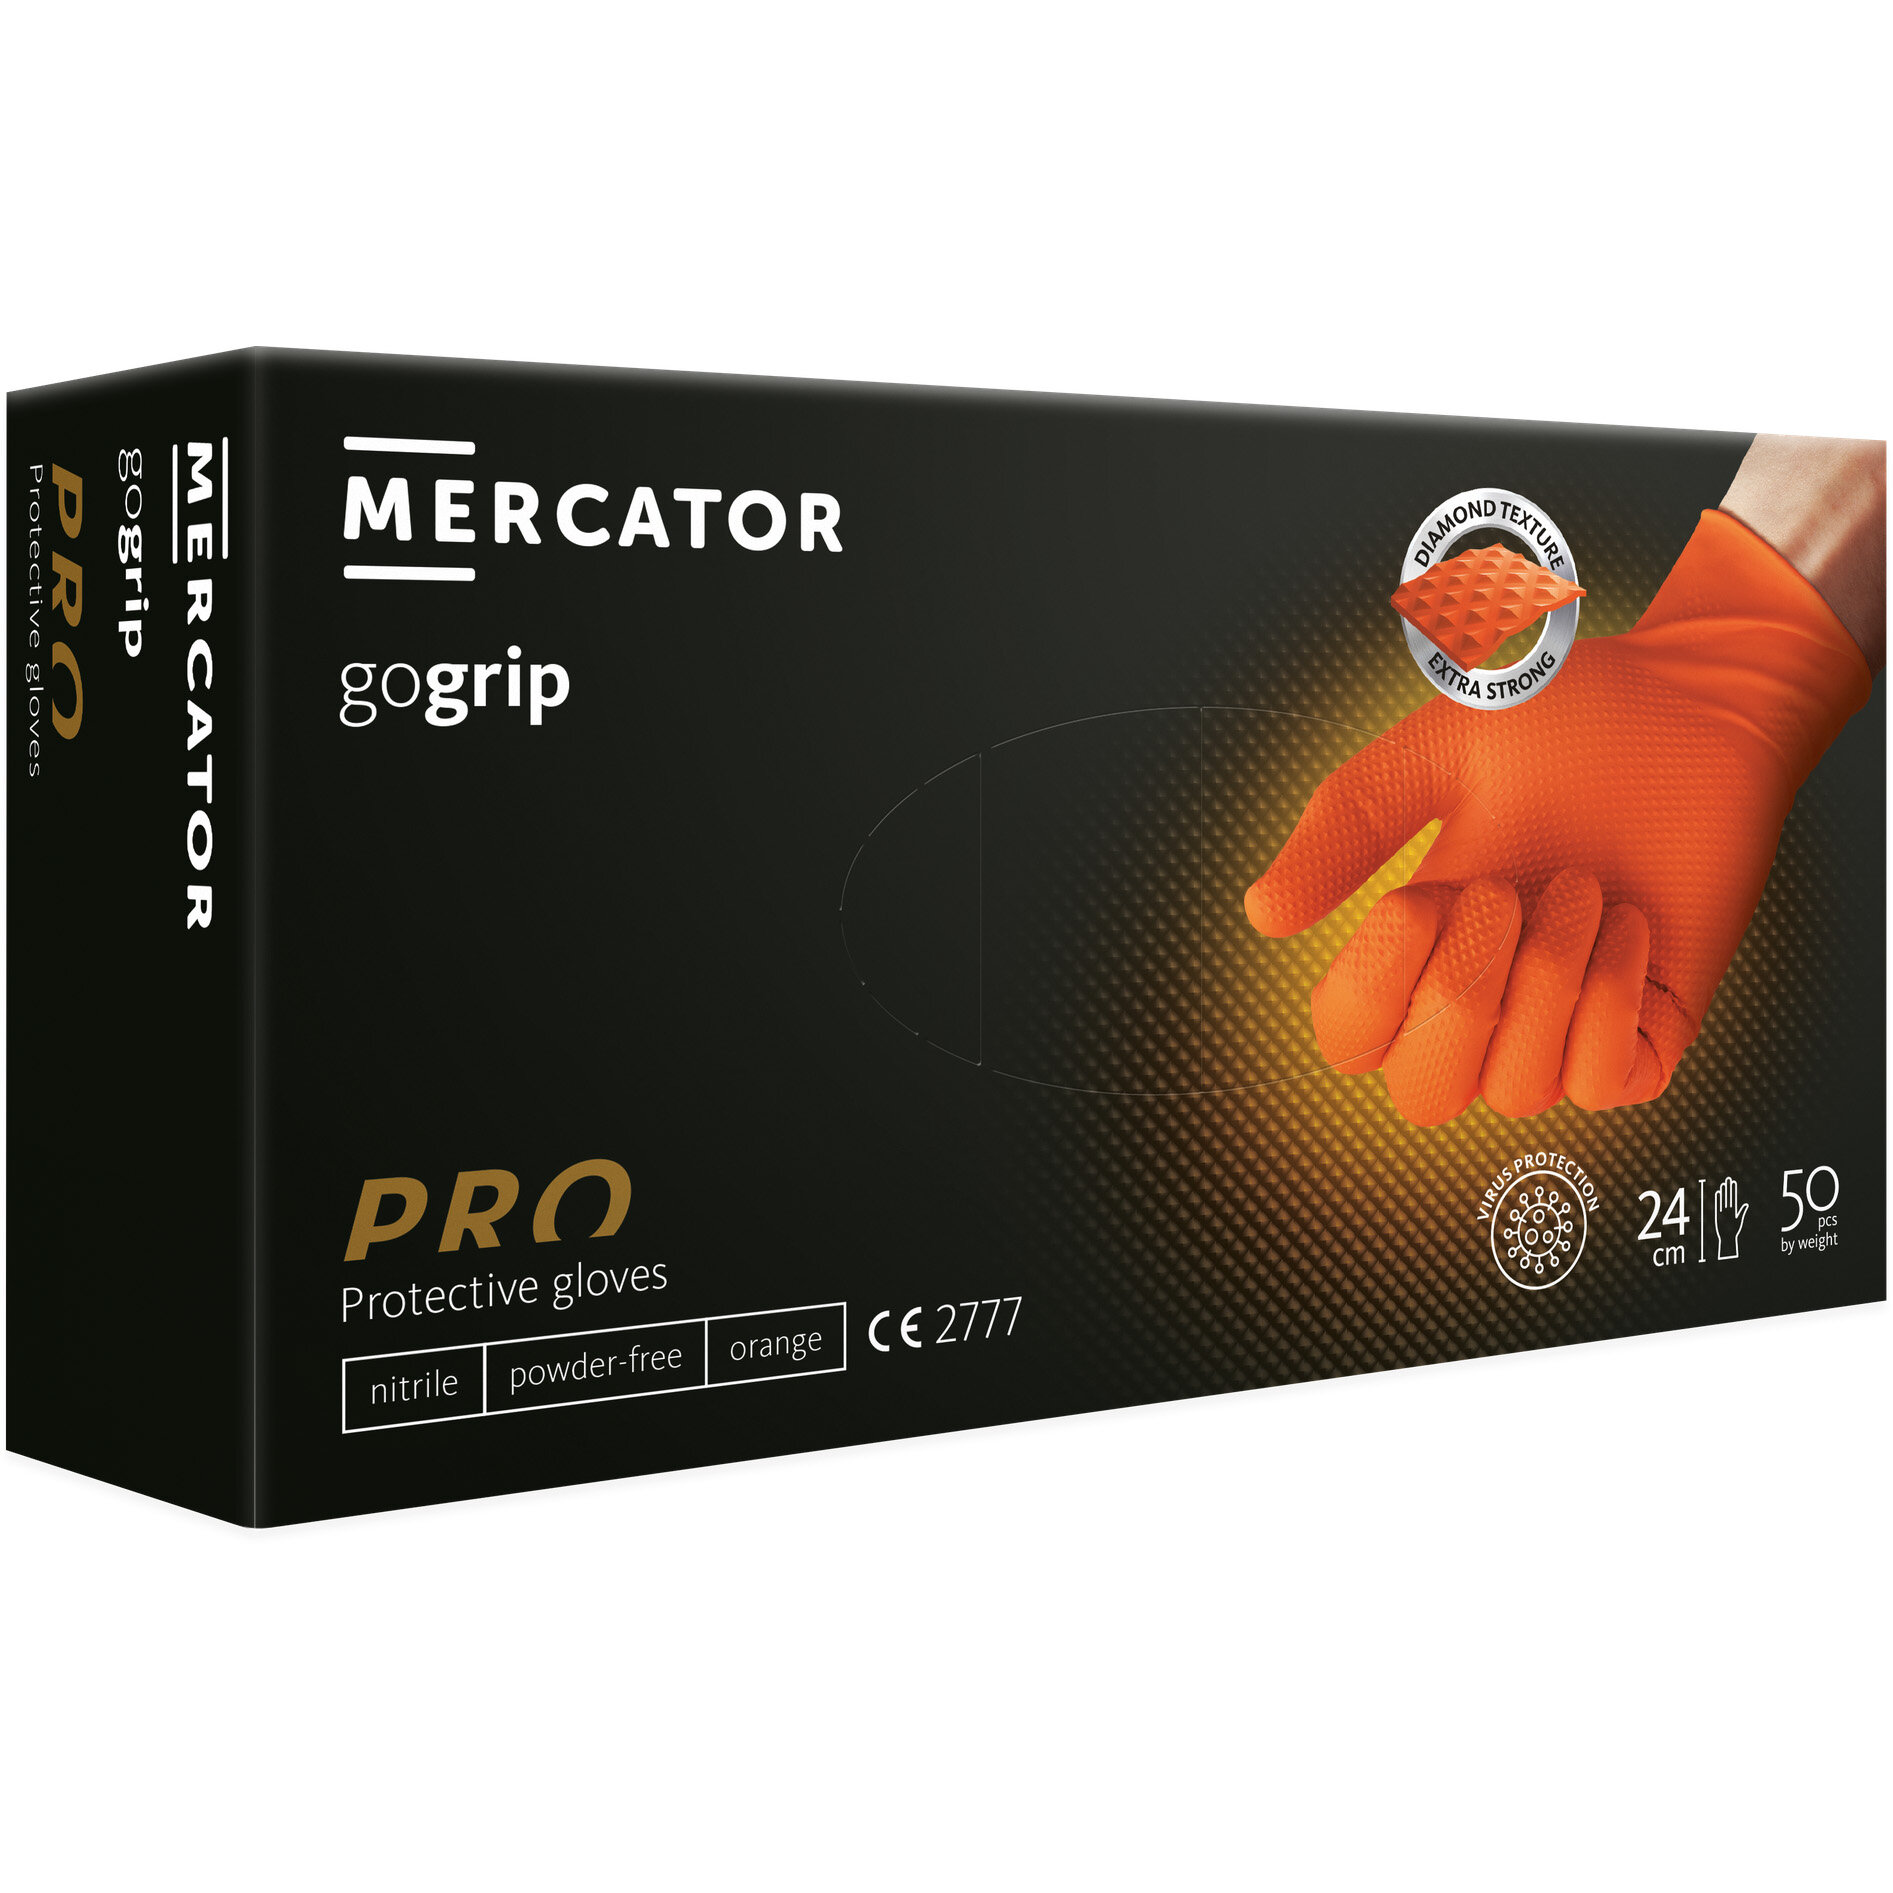 Mercator GoGrip oranje XS poedervrije nitril handschoenen met structuur - 50st